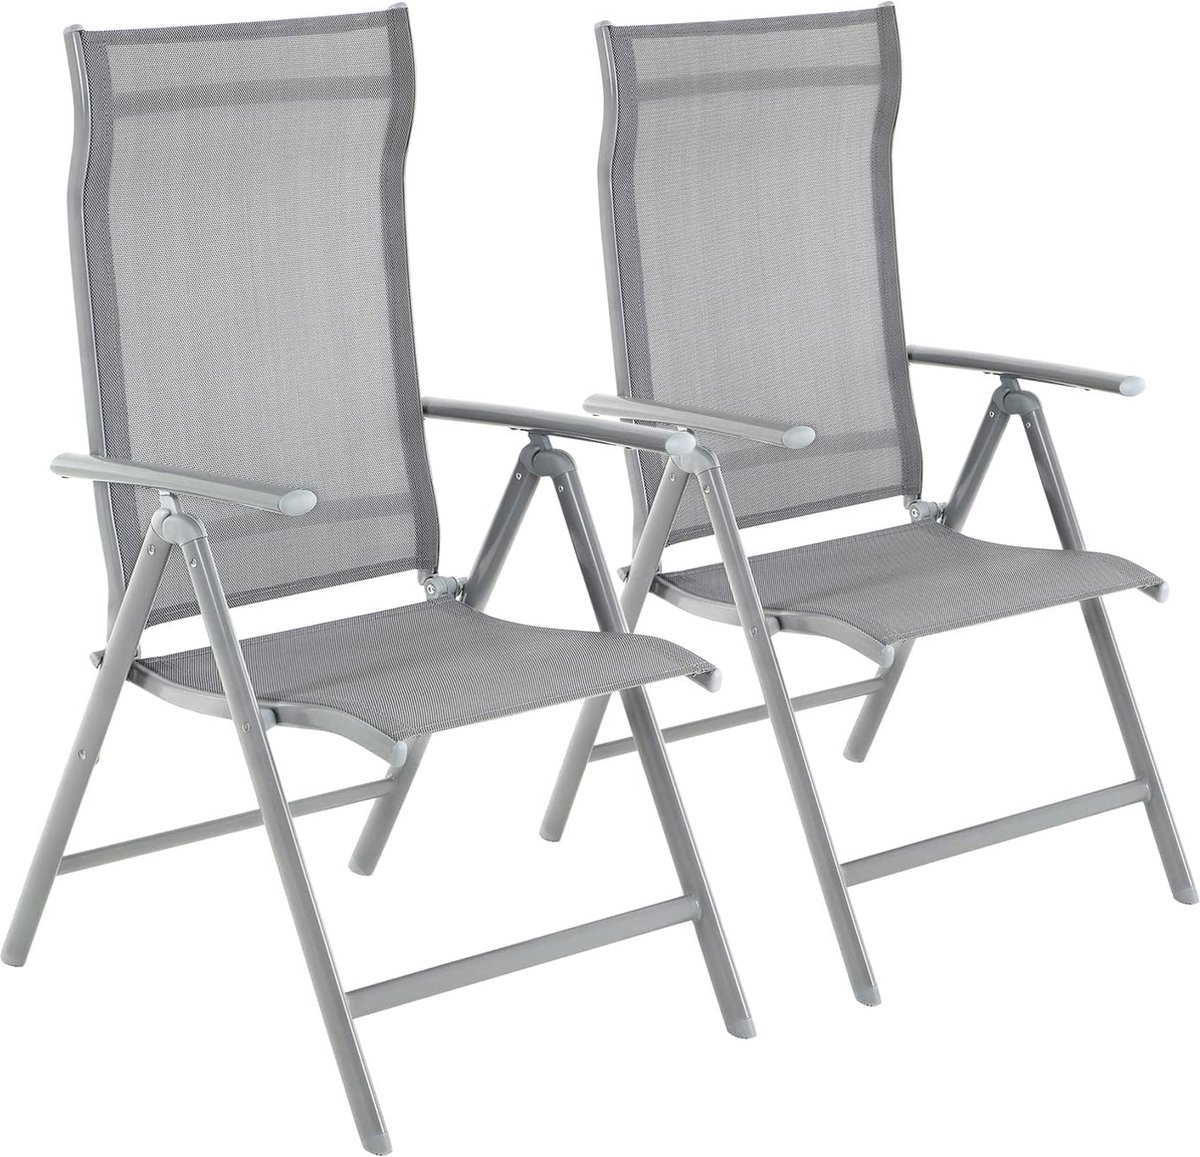 The Mash - Tuinstoelen, set van 2, klapstoelen, buitenstoelen met robuust aluminium frame, rugleuning in 8 standen verstelbaar, belastbaar tot 150 kg, grijs